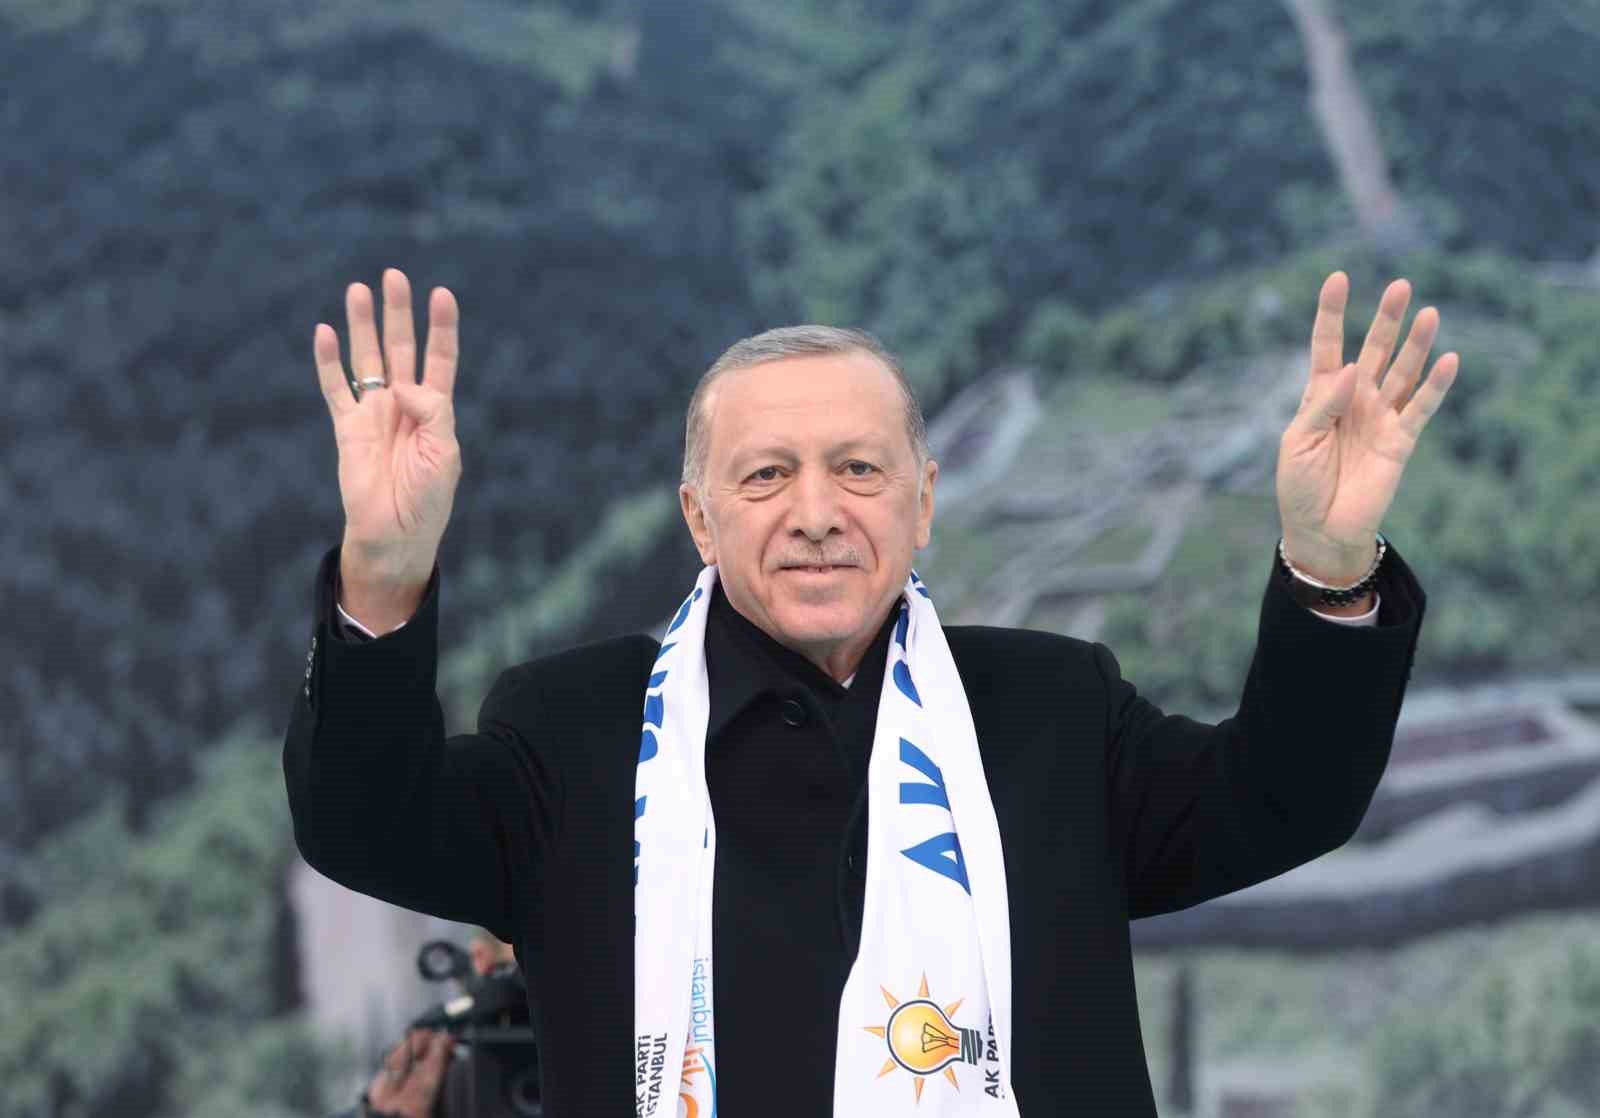 Cumhurbaşkanı Erdoğan: “Ülkemizin 14 Mayıs’ta gideceği seçimlerde küresel güçleri arkasına alarak tek parti faşizmini hortlatmak isteyen zihniyete karşı yeni bir meydan okumaya hazırlanıyoruz”